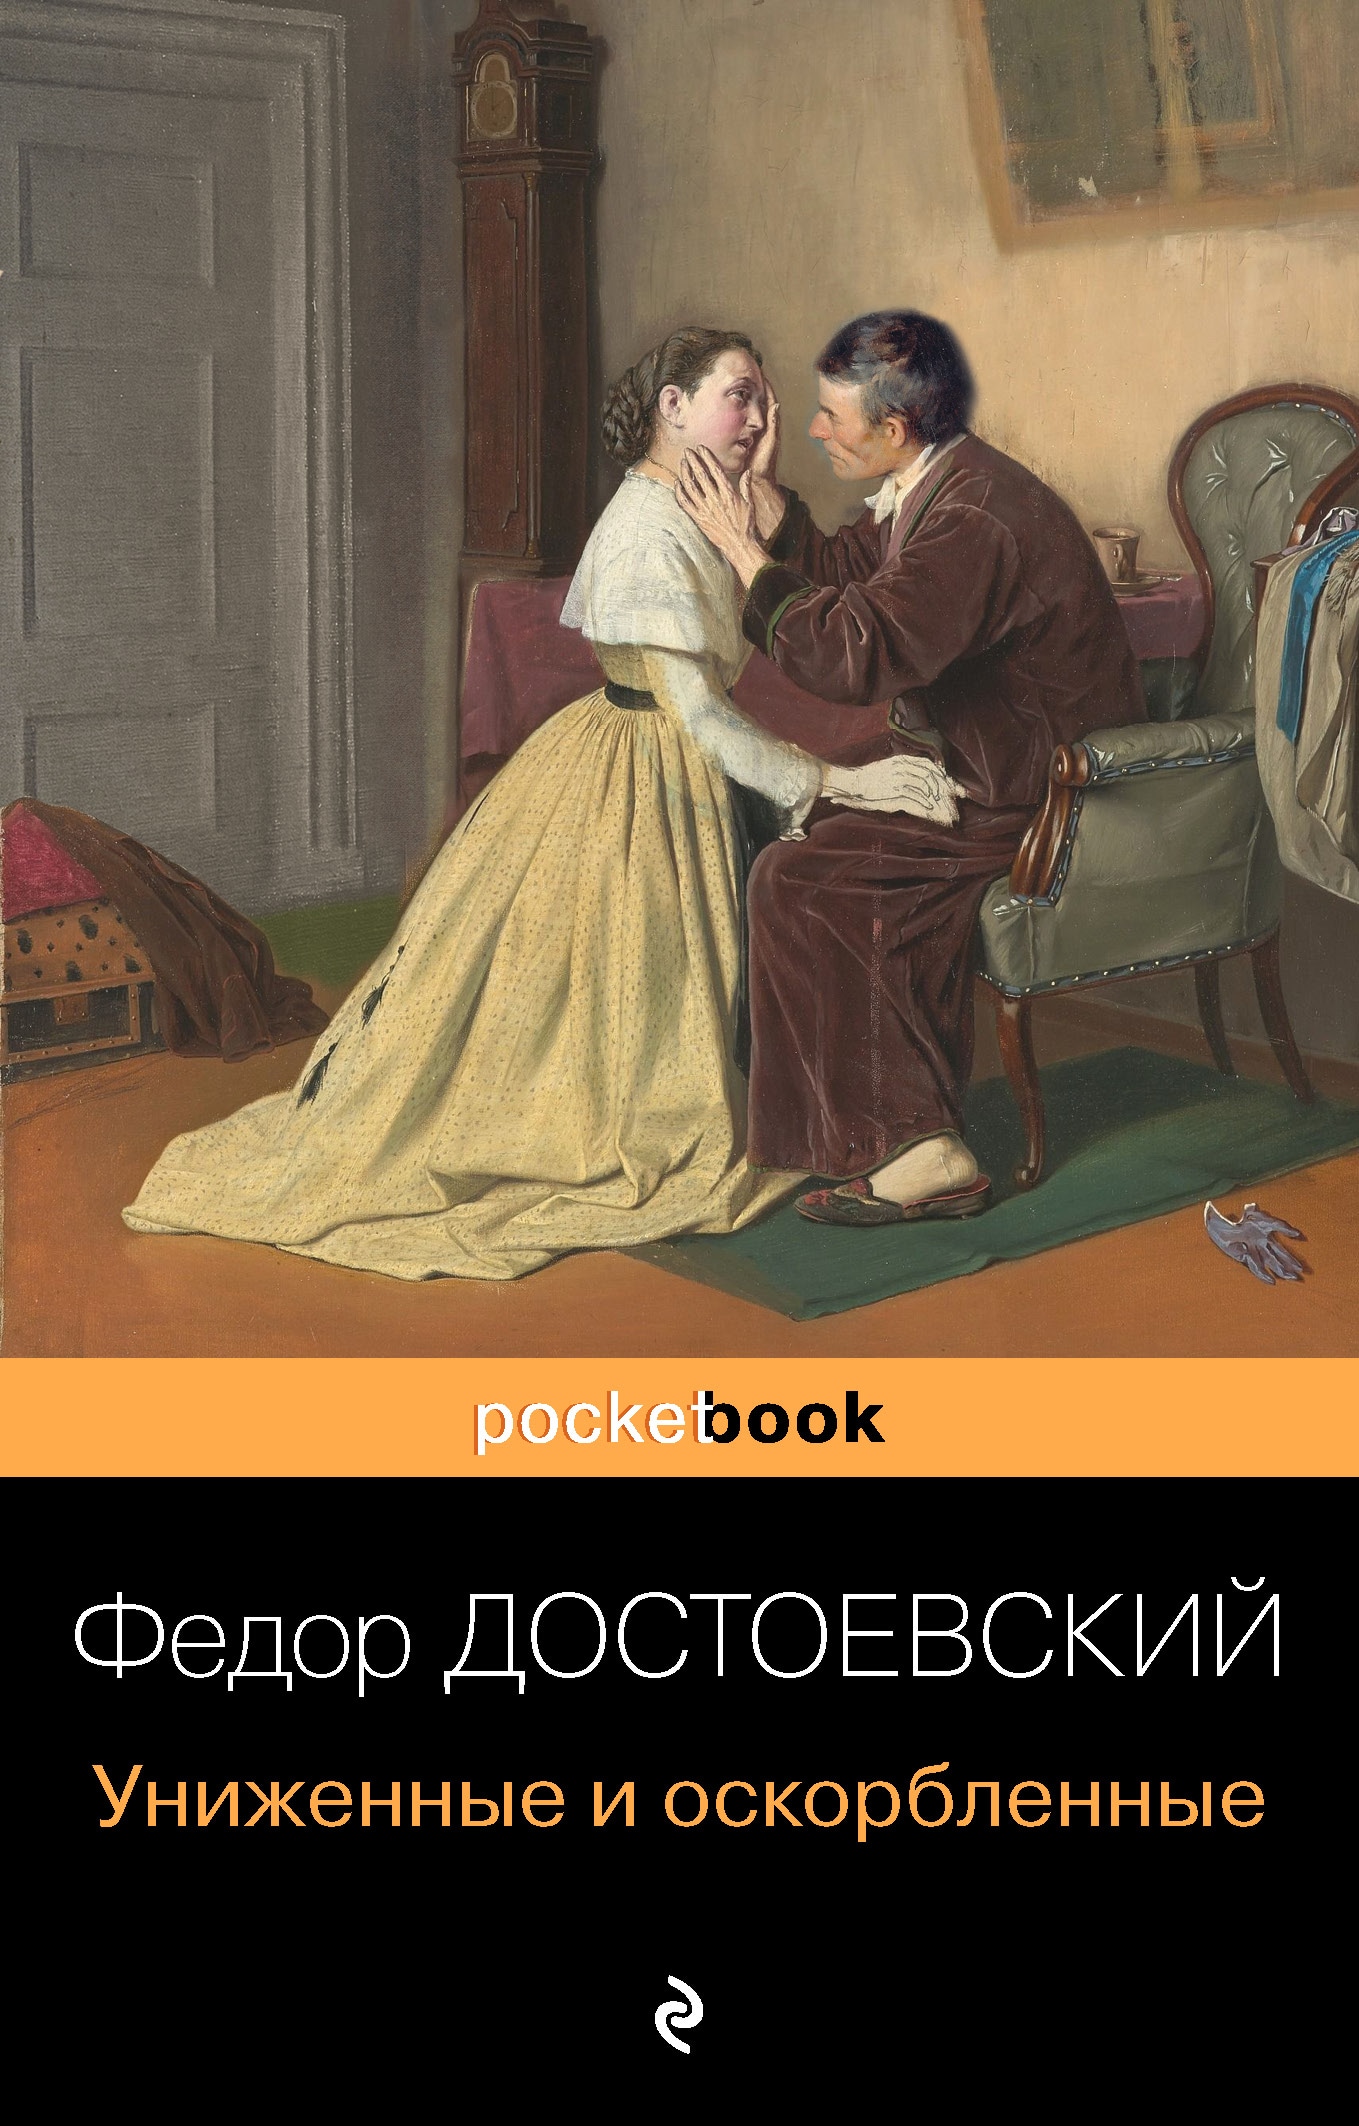 Книга «Униженные и оскорбленные» Федор Достоевский — 1 декабря 2020 г.